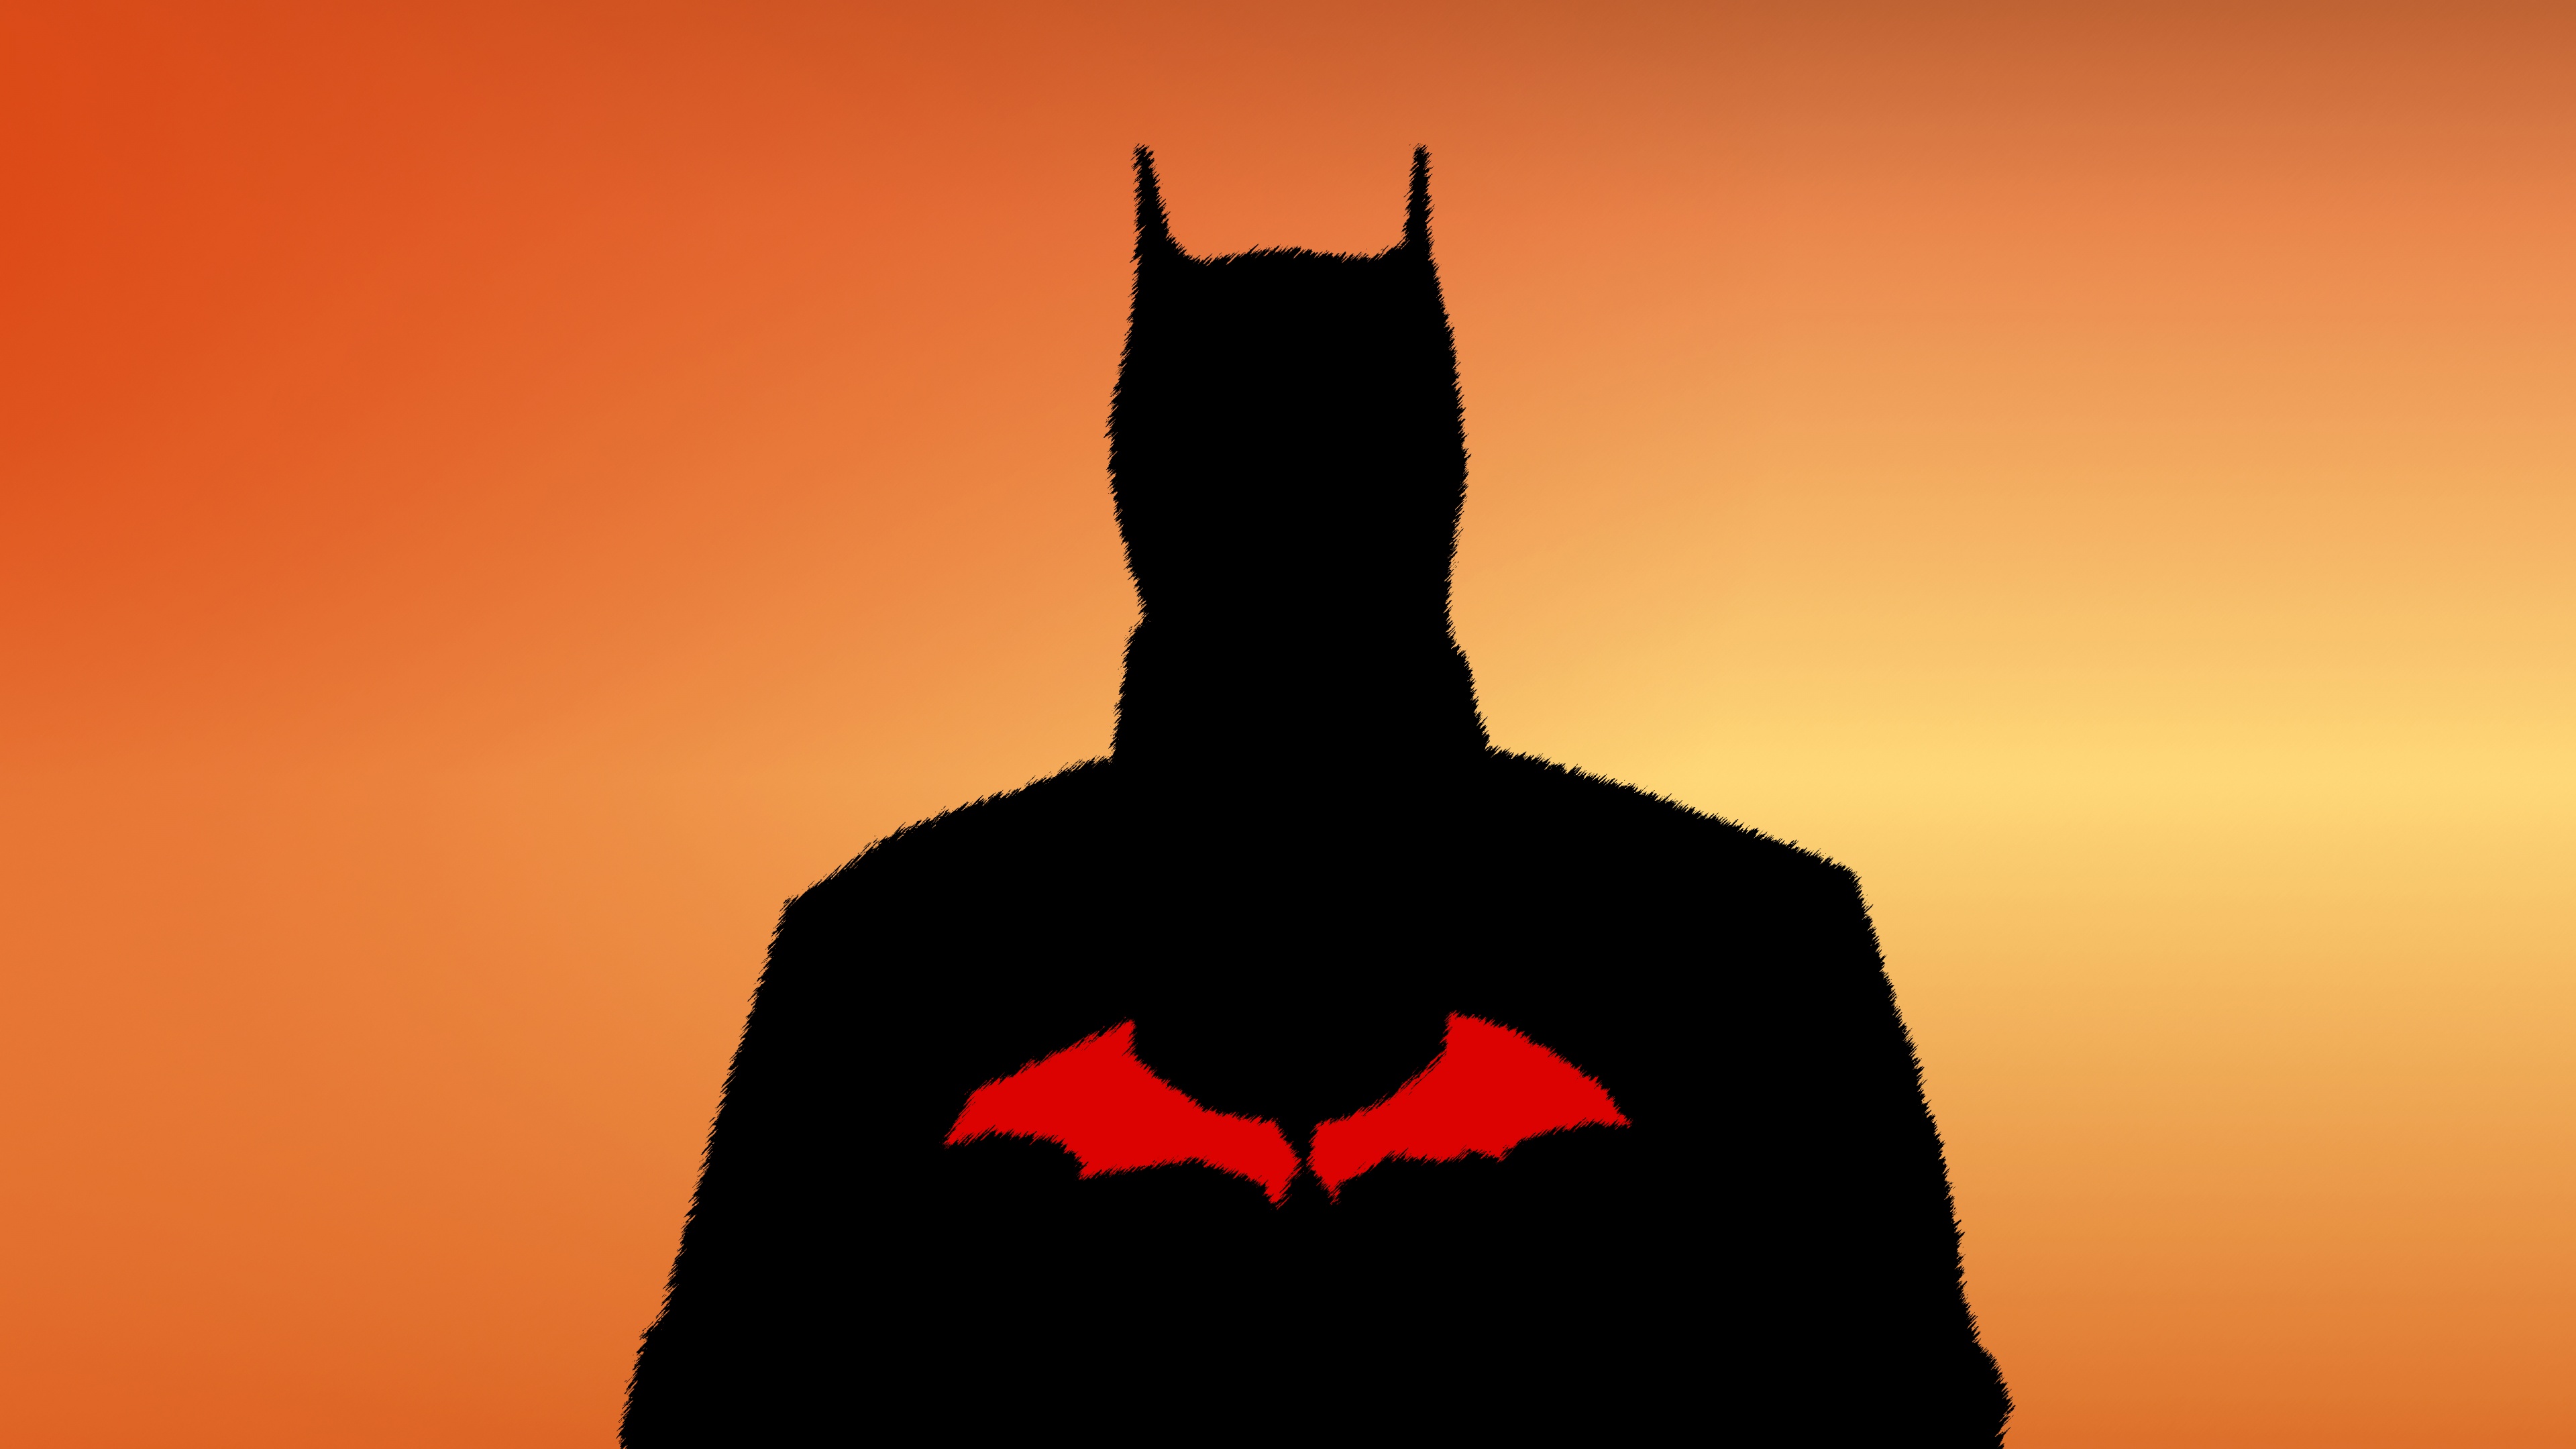 Batman DC Comics Superhero 4K wallpaper download